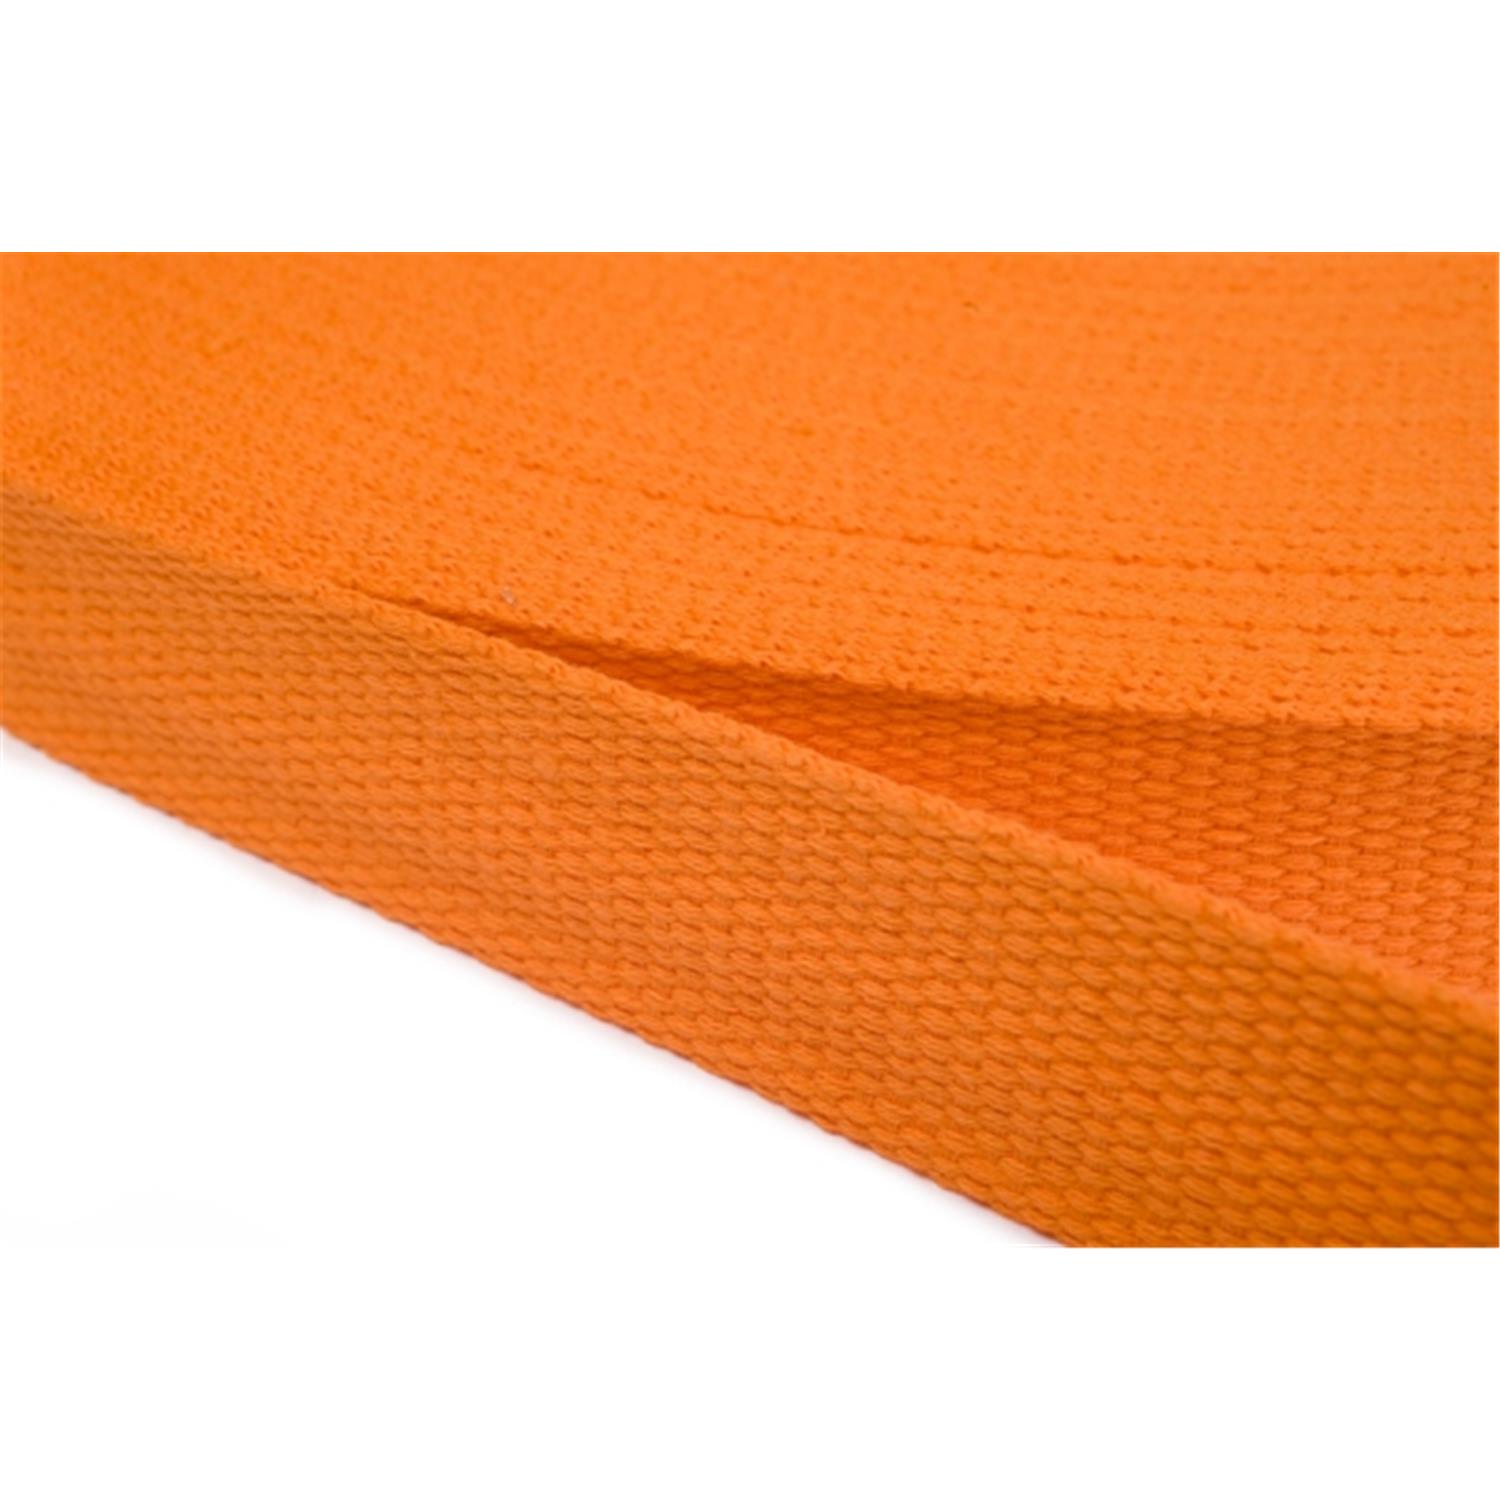 Gurtband aus Baumwolle 40mm in 20 Farben 06 - orange 6 Meter